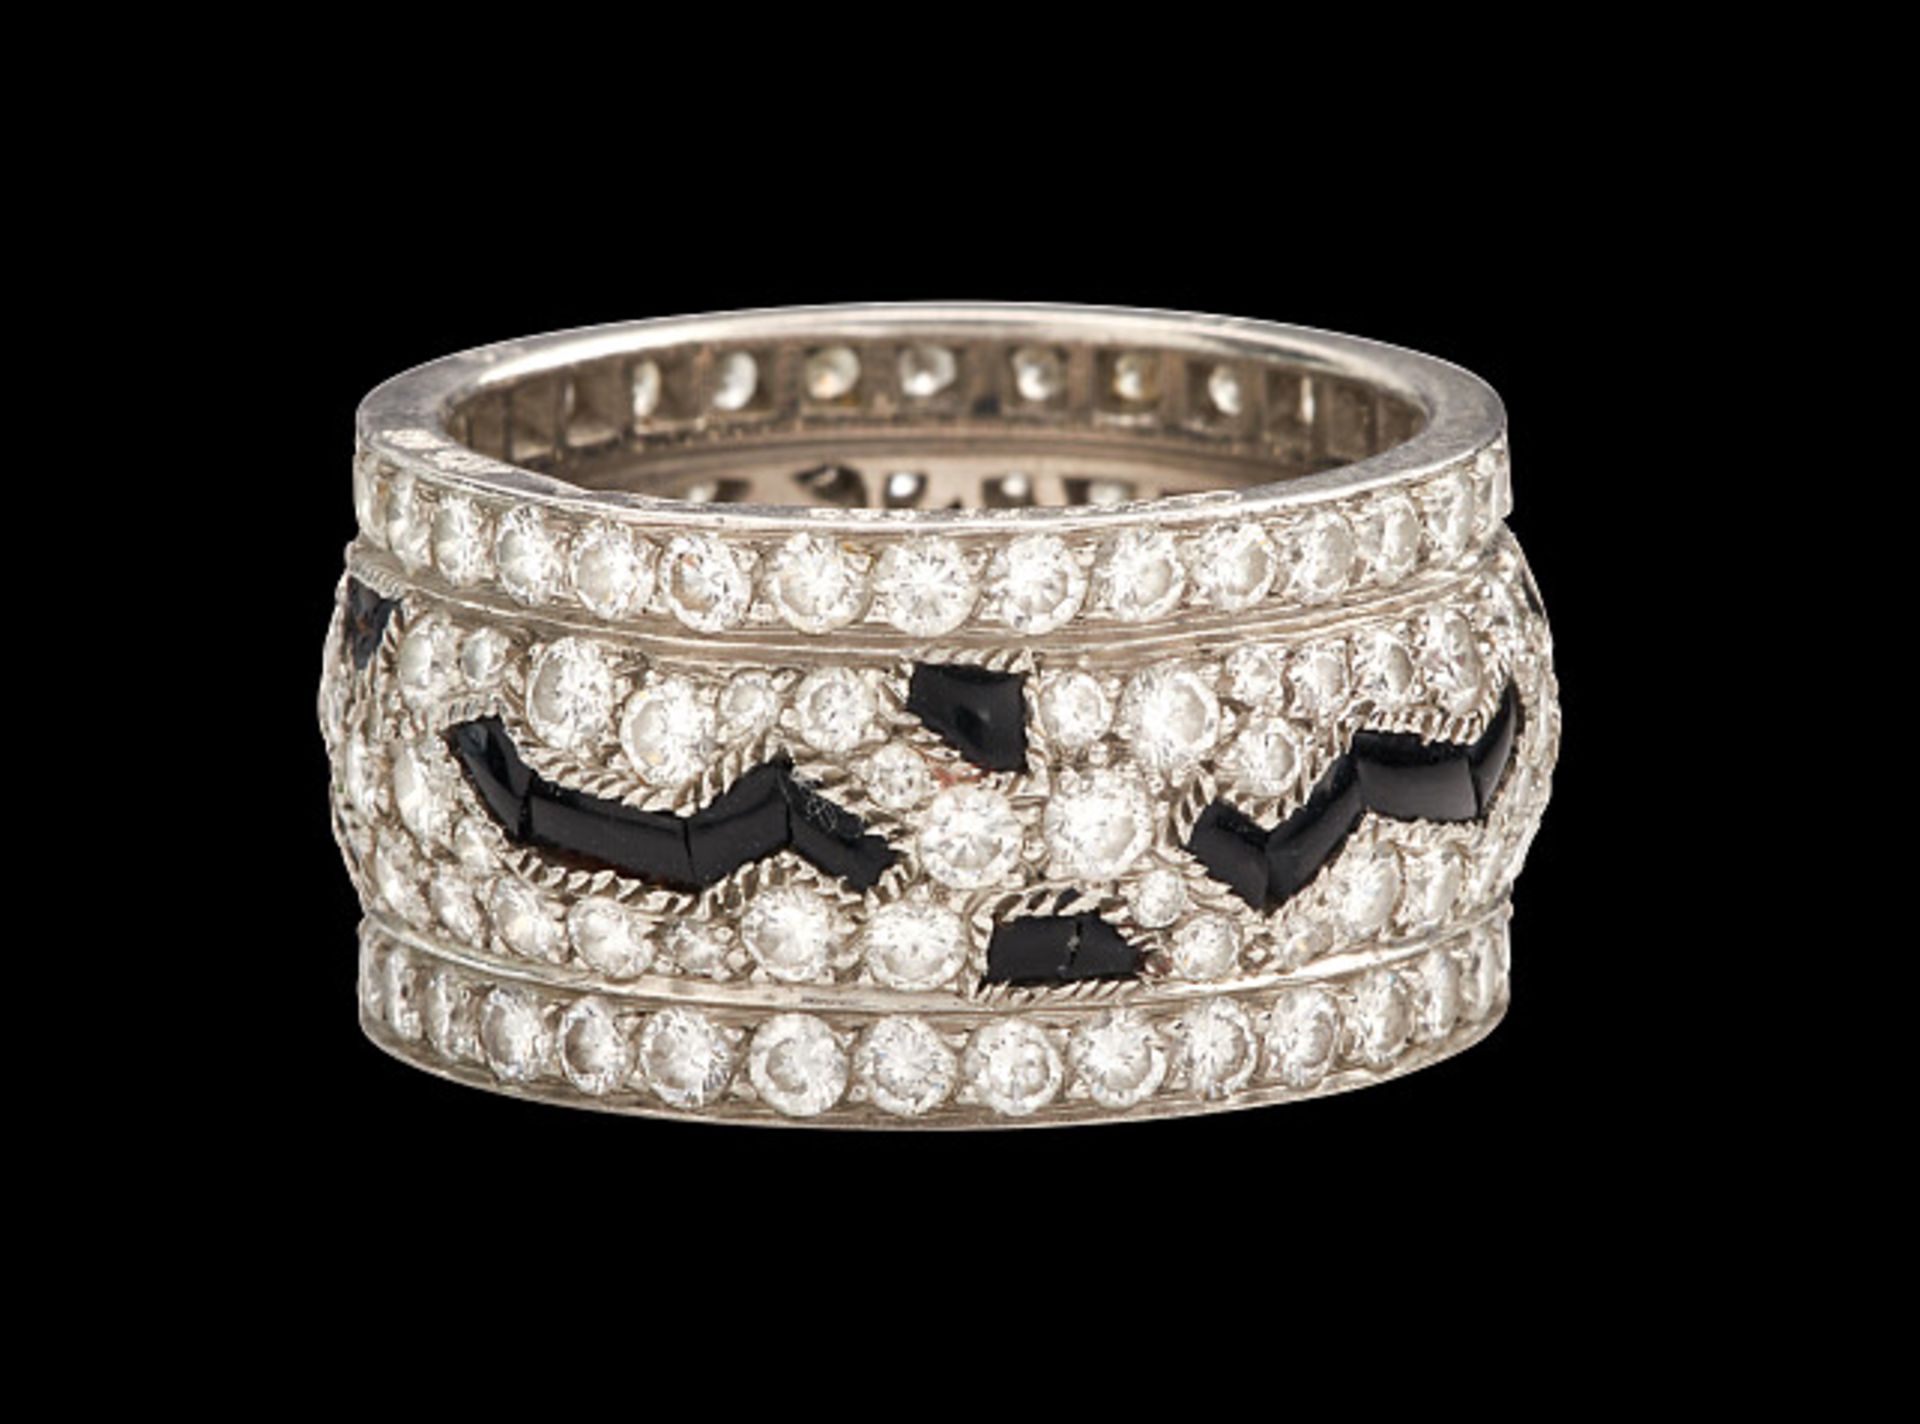 Deutsches Reich 1933 - 1945 - Schmuck und Juwelen : Diamant - Onyx Ring by Cartier. - Bild 6 aus 15